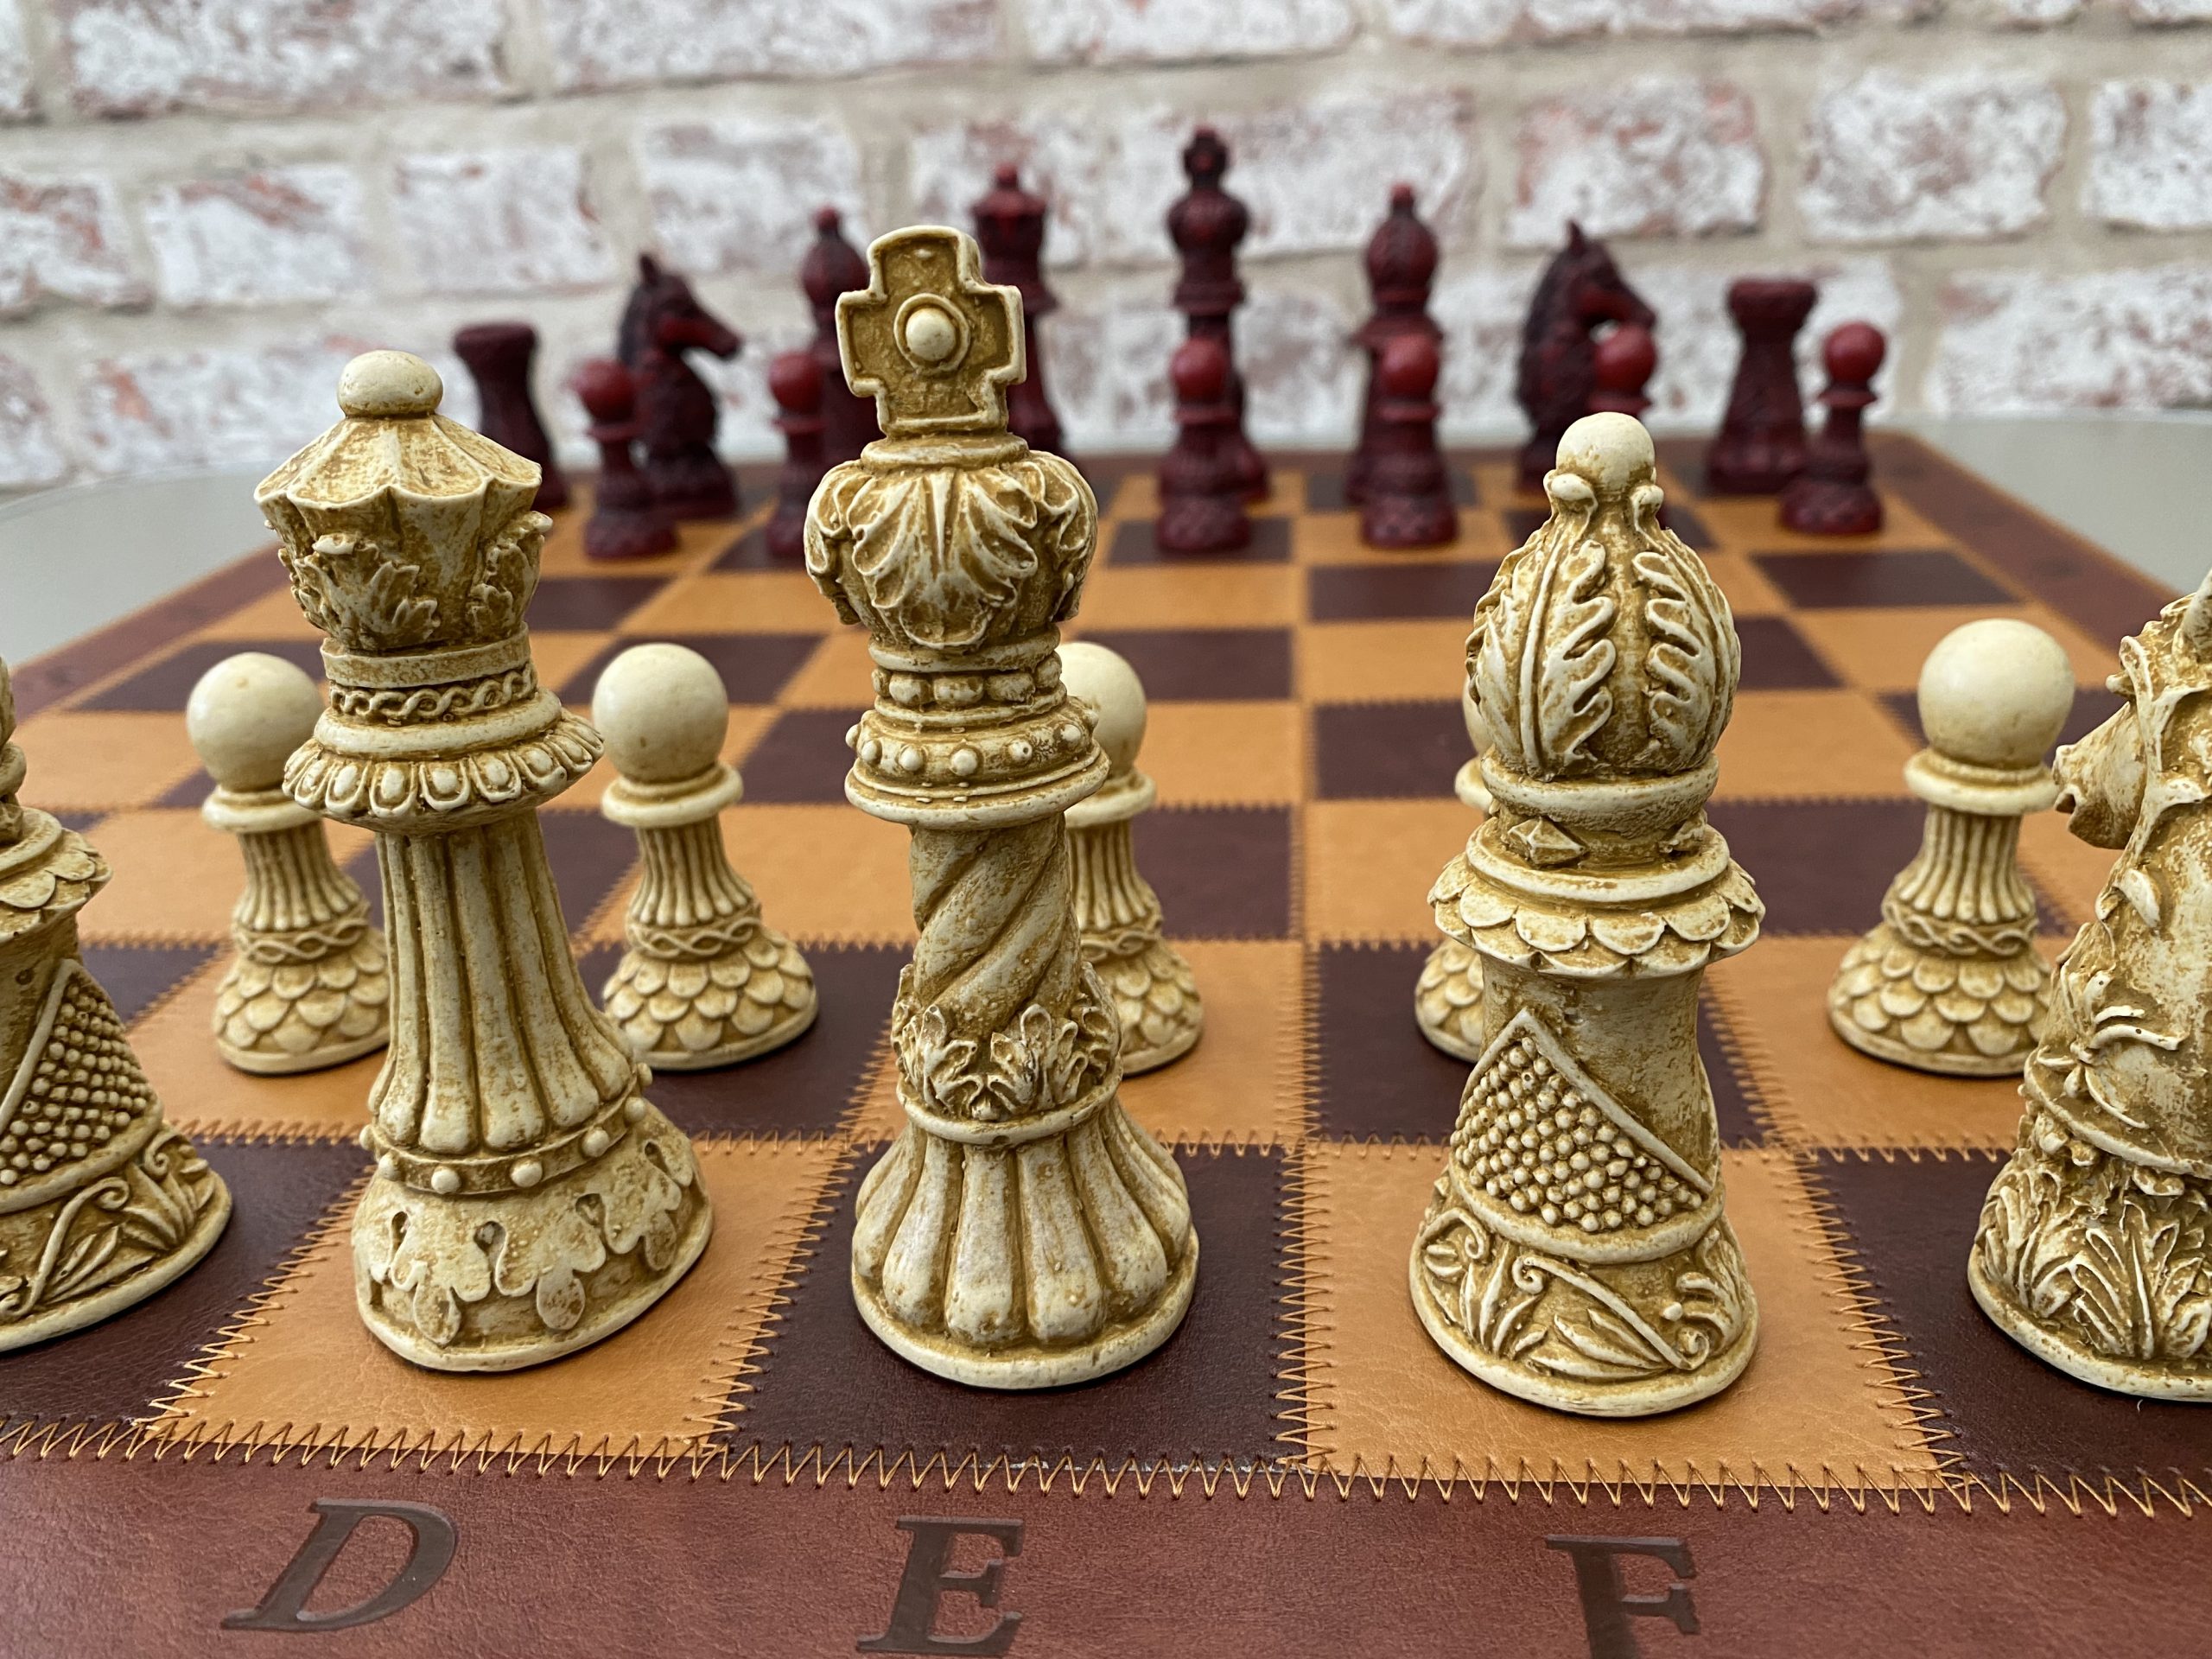 Berkeley Chess Ornate Staunton made from Stone